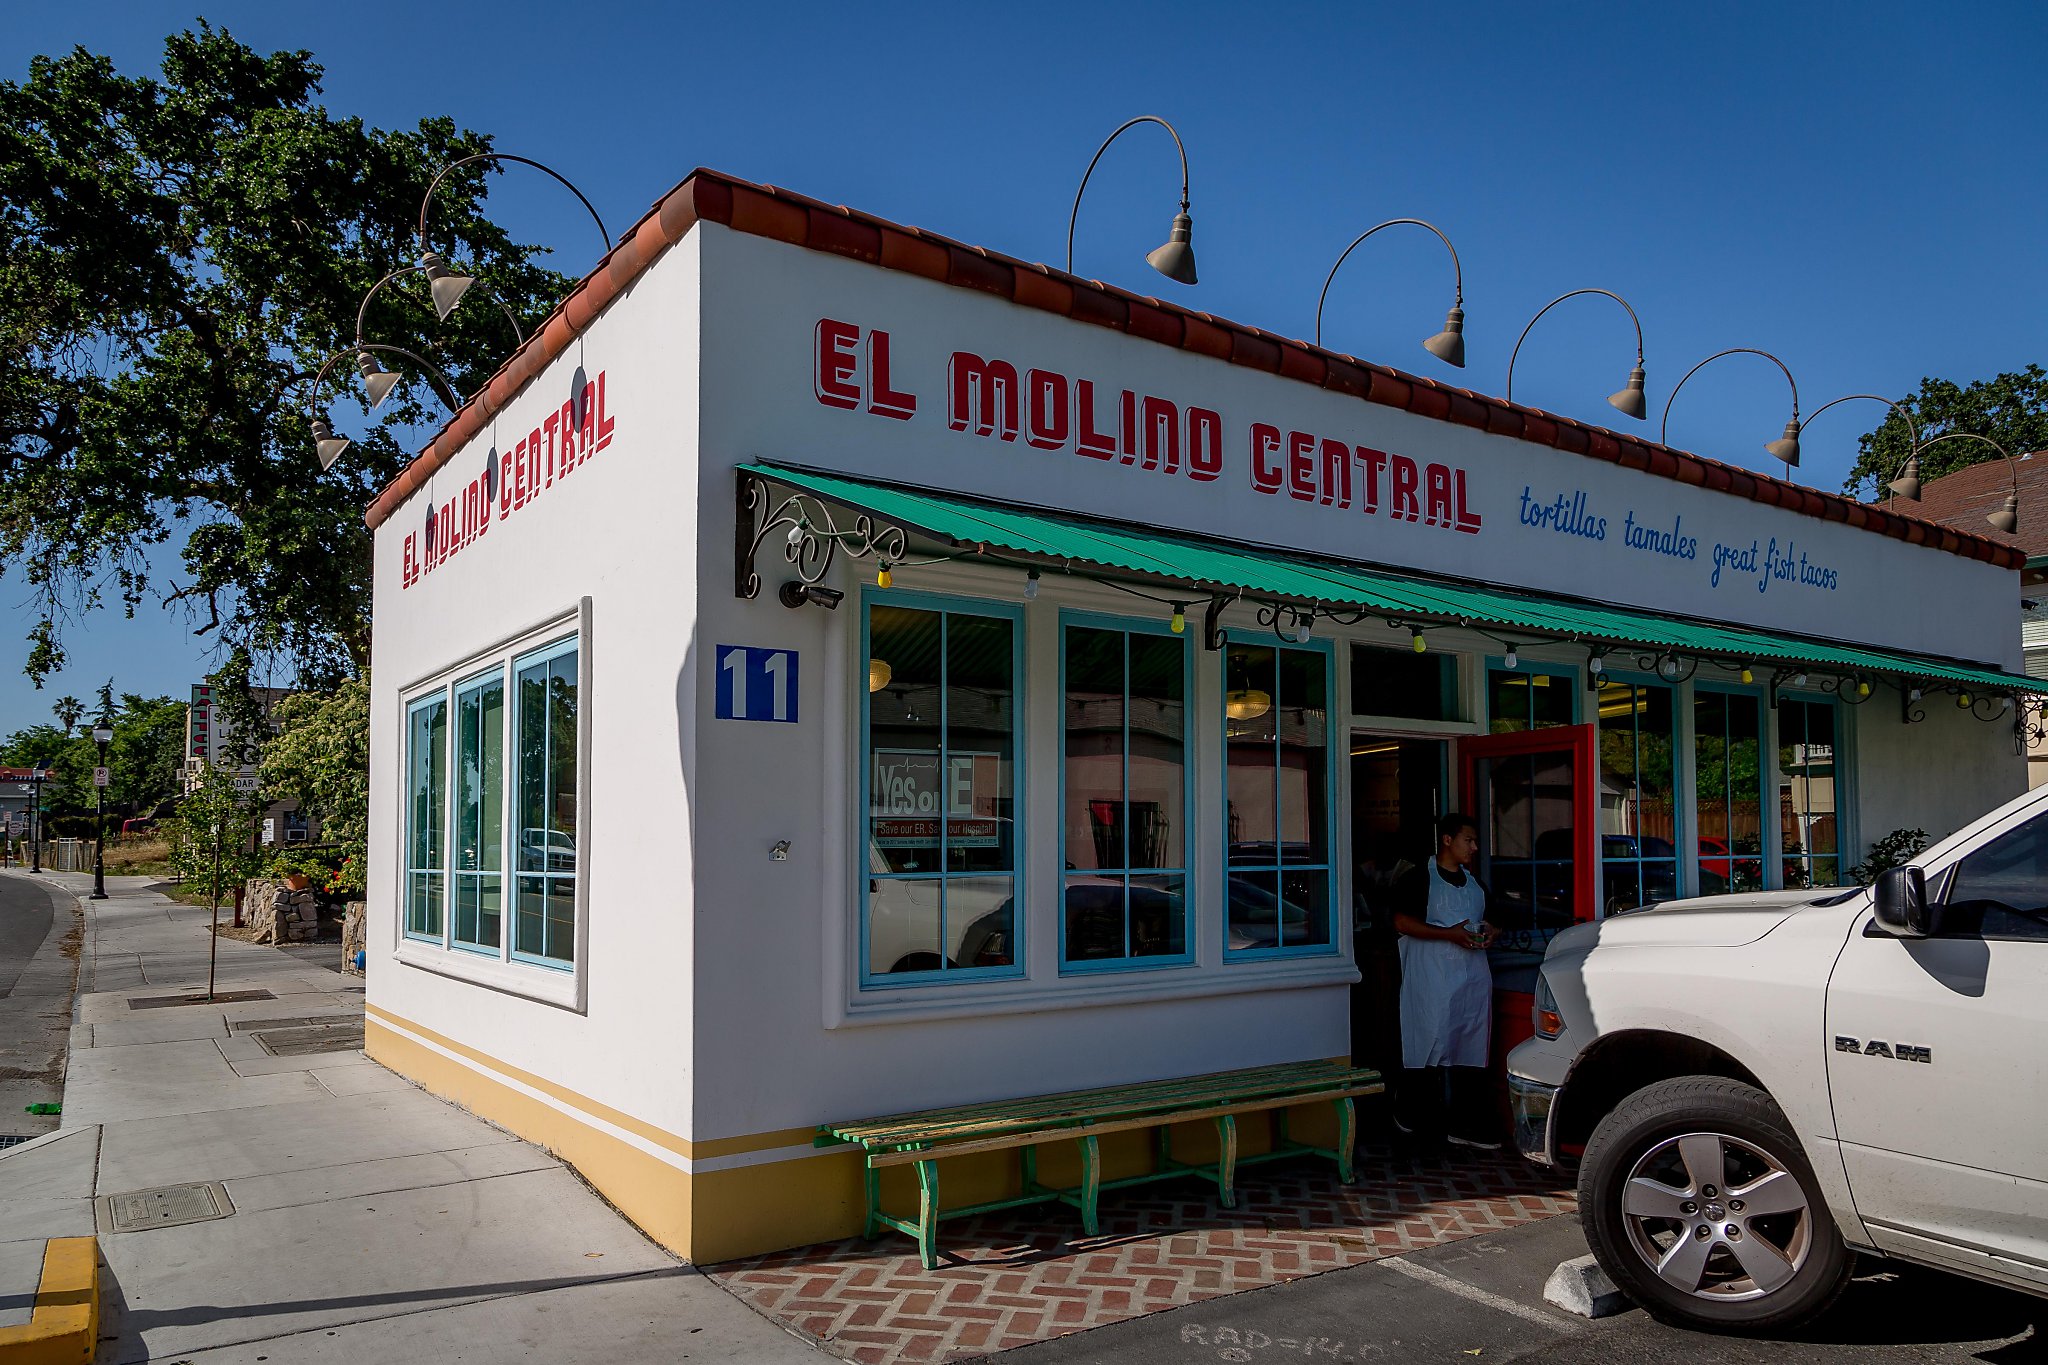 El Molino Central in Sonoma delivers Bay Area's best Mexican food